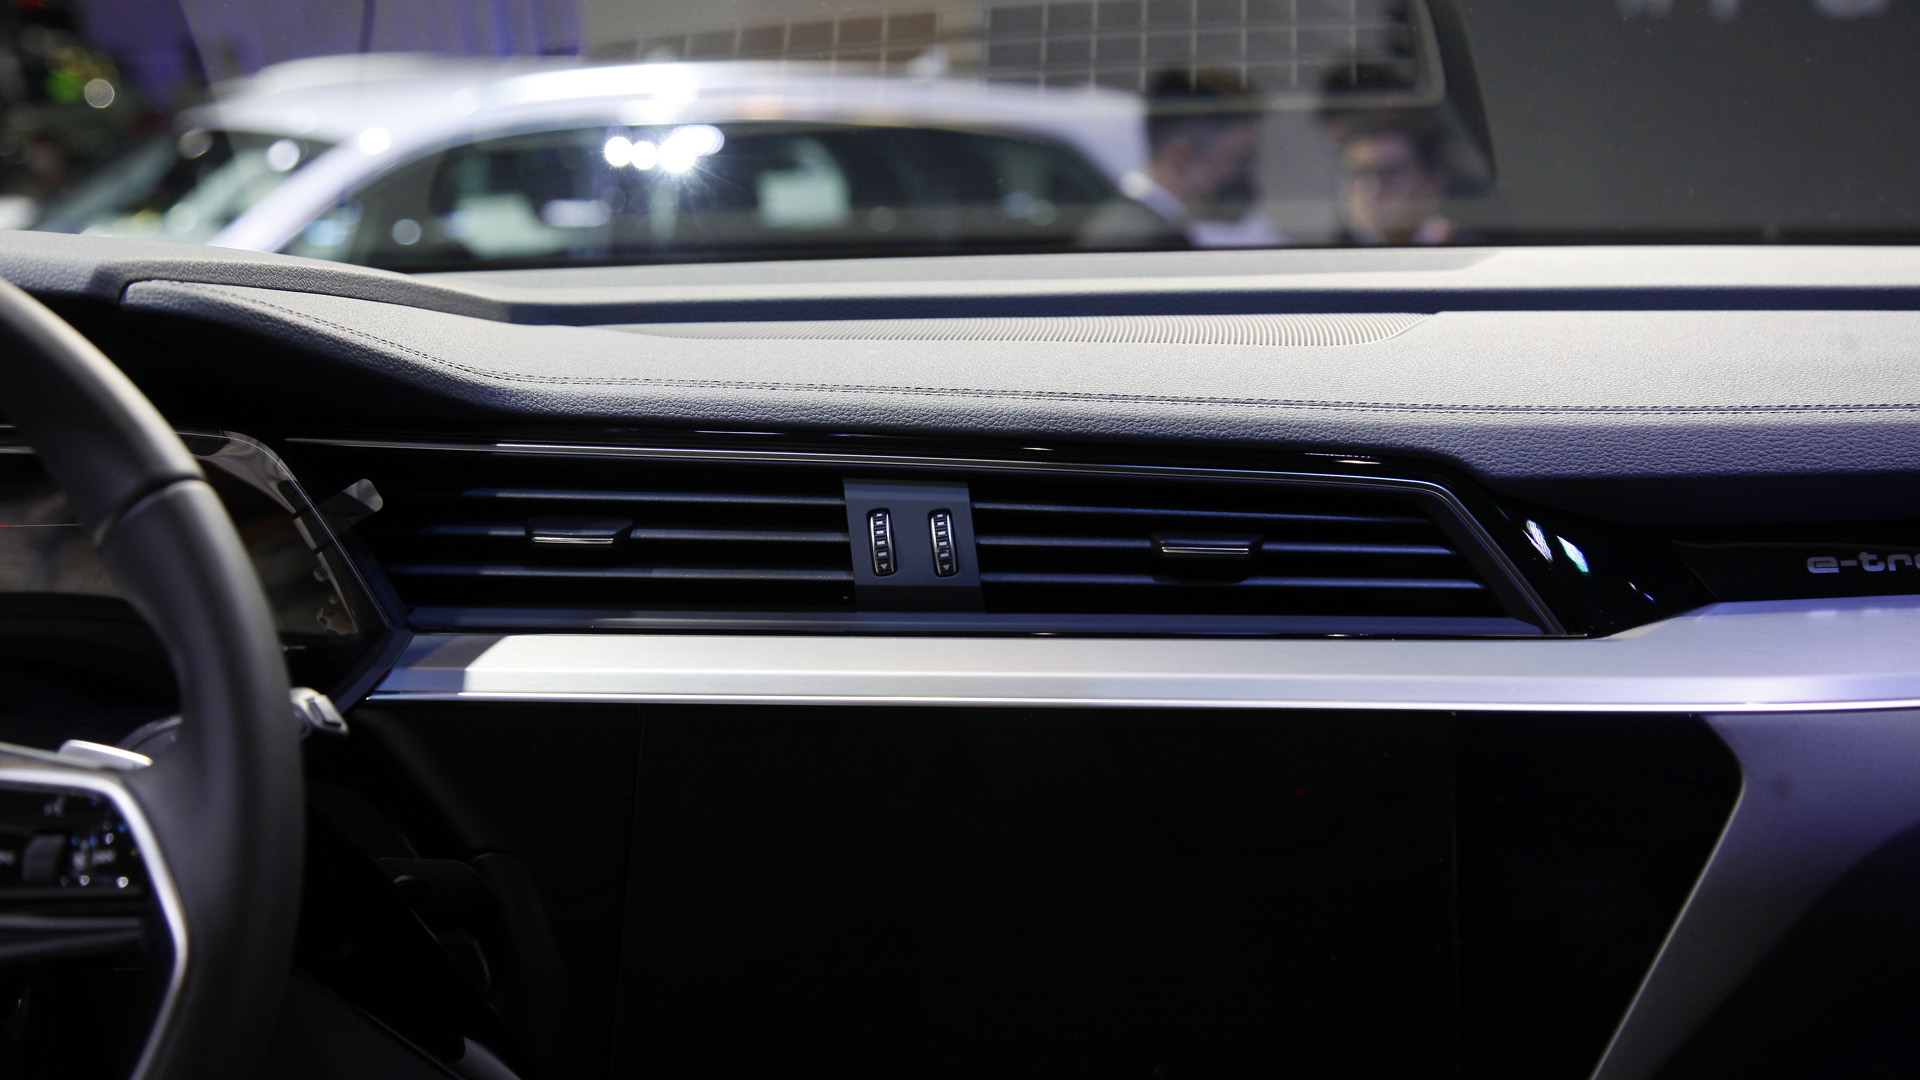 Triển lãm Ô tô Việt Nam 2022: Audi e-tron SUV có hai phiên bản, khởi điểm từ 2,97 tỷ đồng - Ảnh 10.